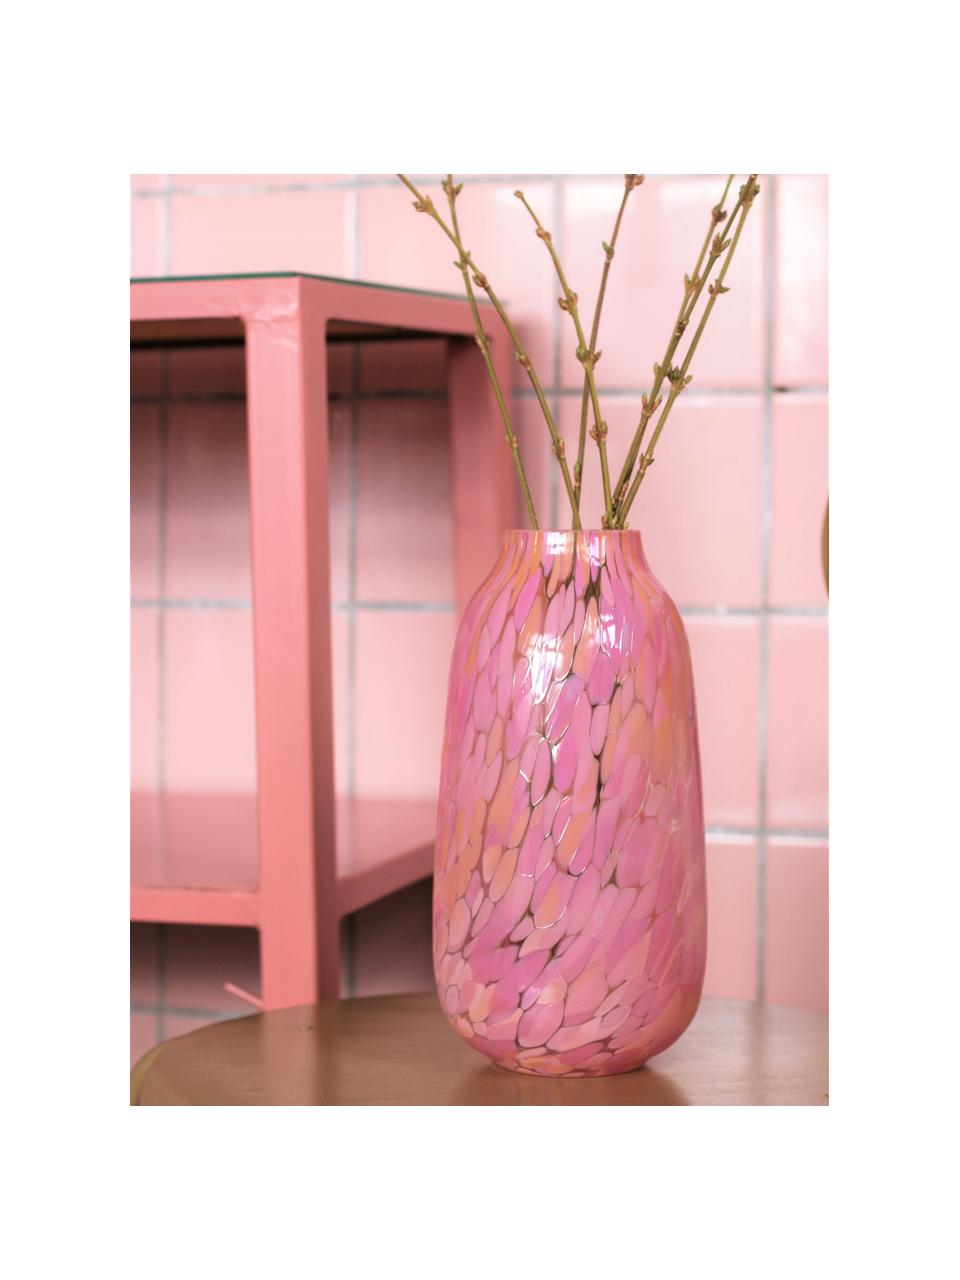 Ręcznie wykonany wazon Confetti, Szkło, Blady różowy, peach, Ø 13 x W 26 cm